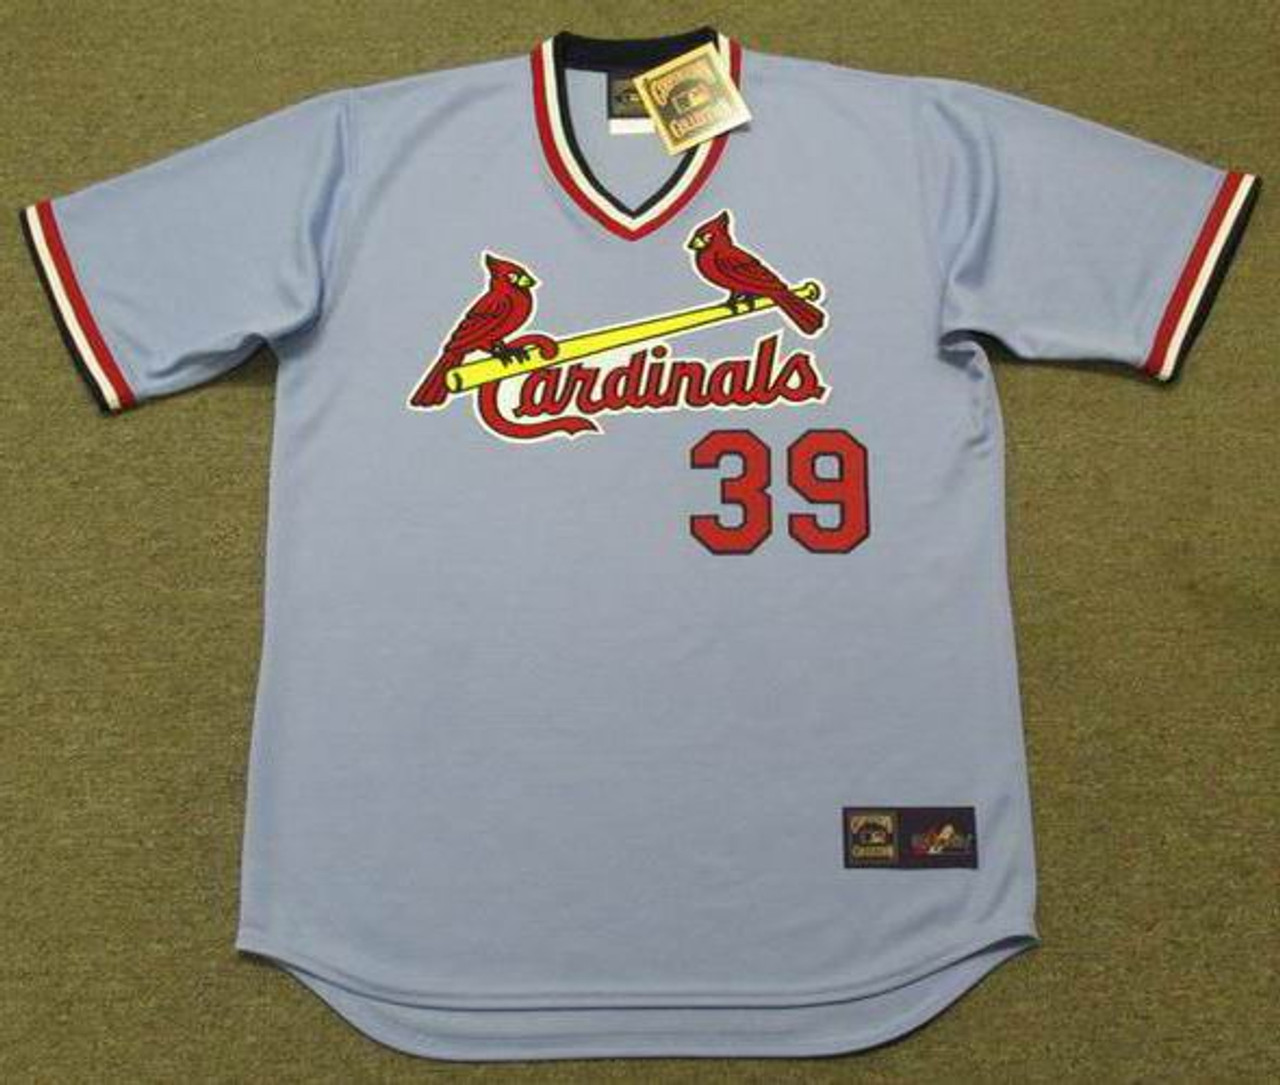 1975 St. Louis Cardinals - Best Baseball uniforms